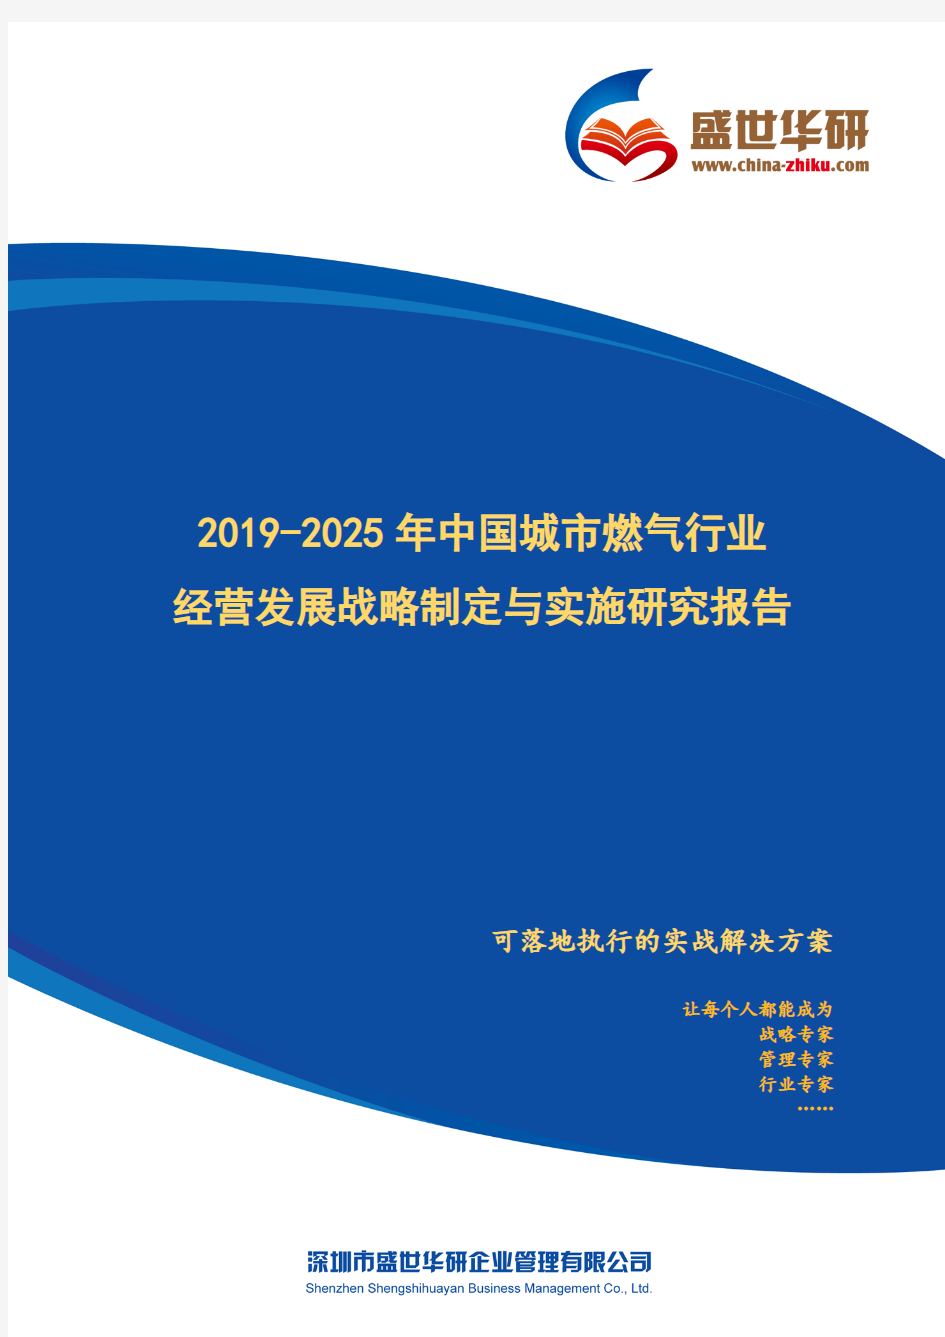 【完整版】2019-2025年中国城市燃气行业经营发展战略及规划制定与实施研究报告